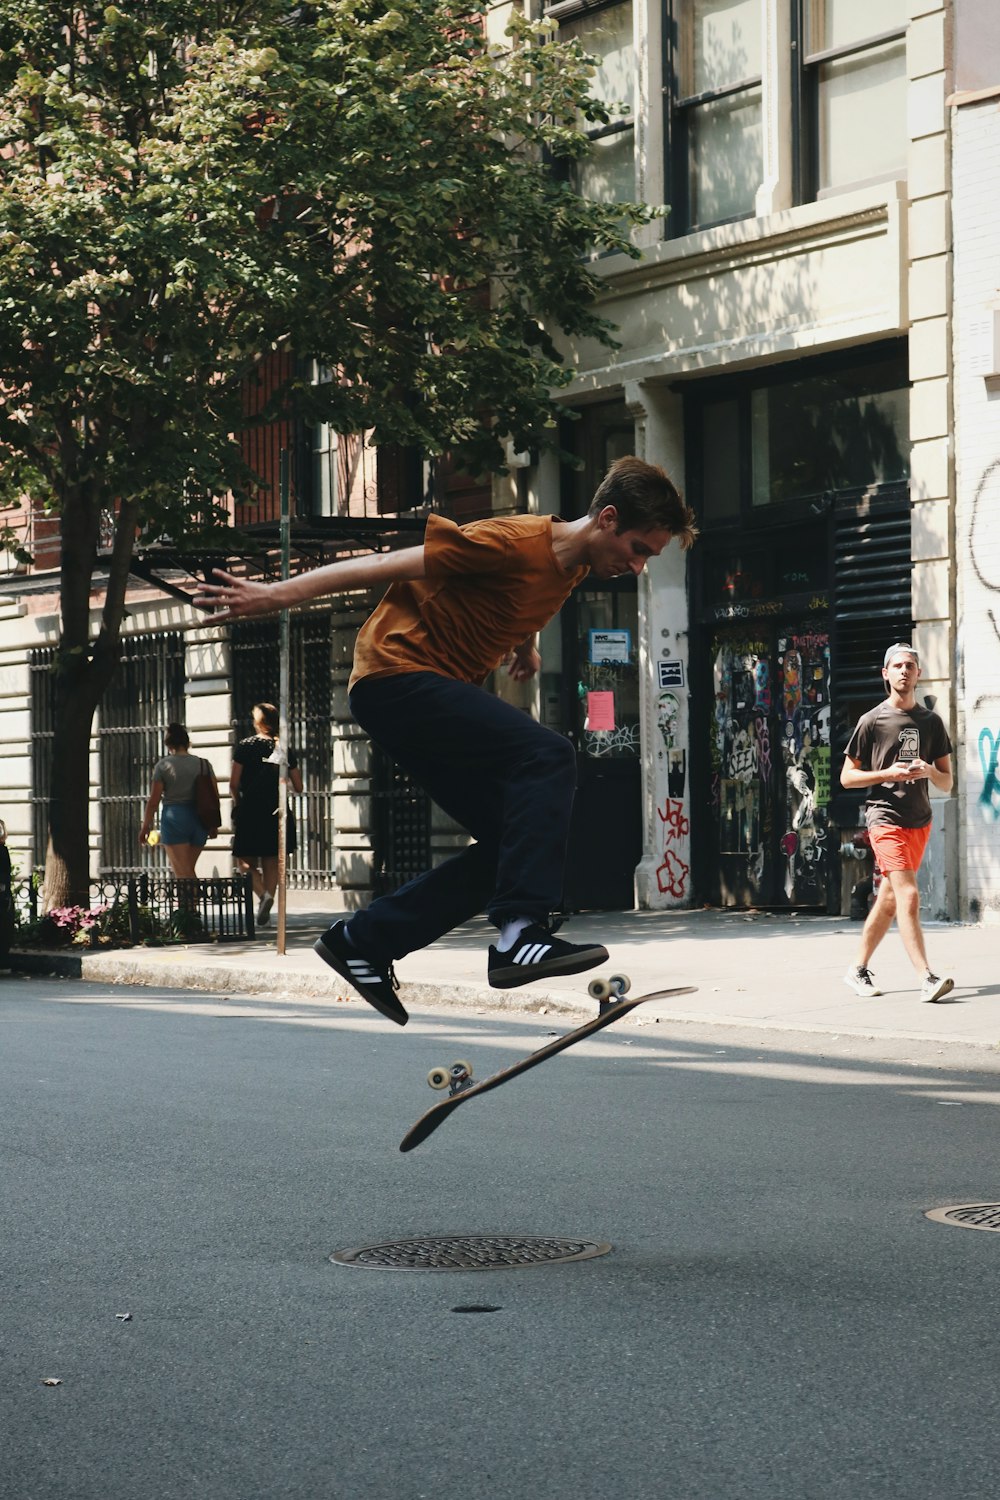 man doing skateboard tricks